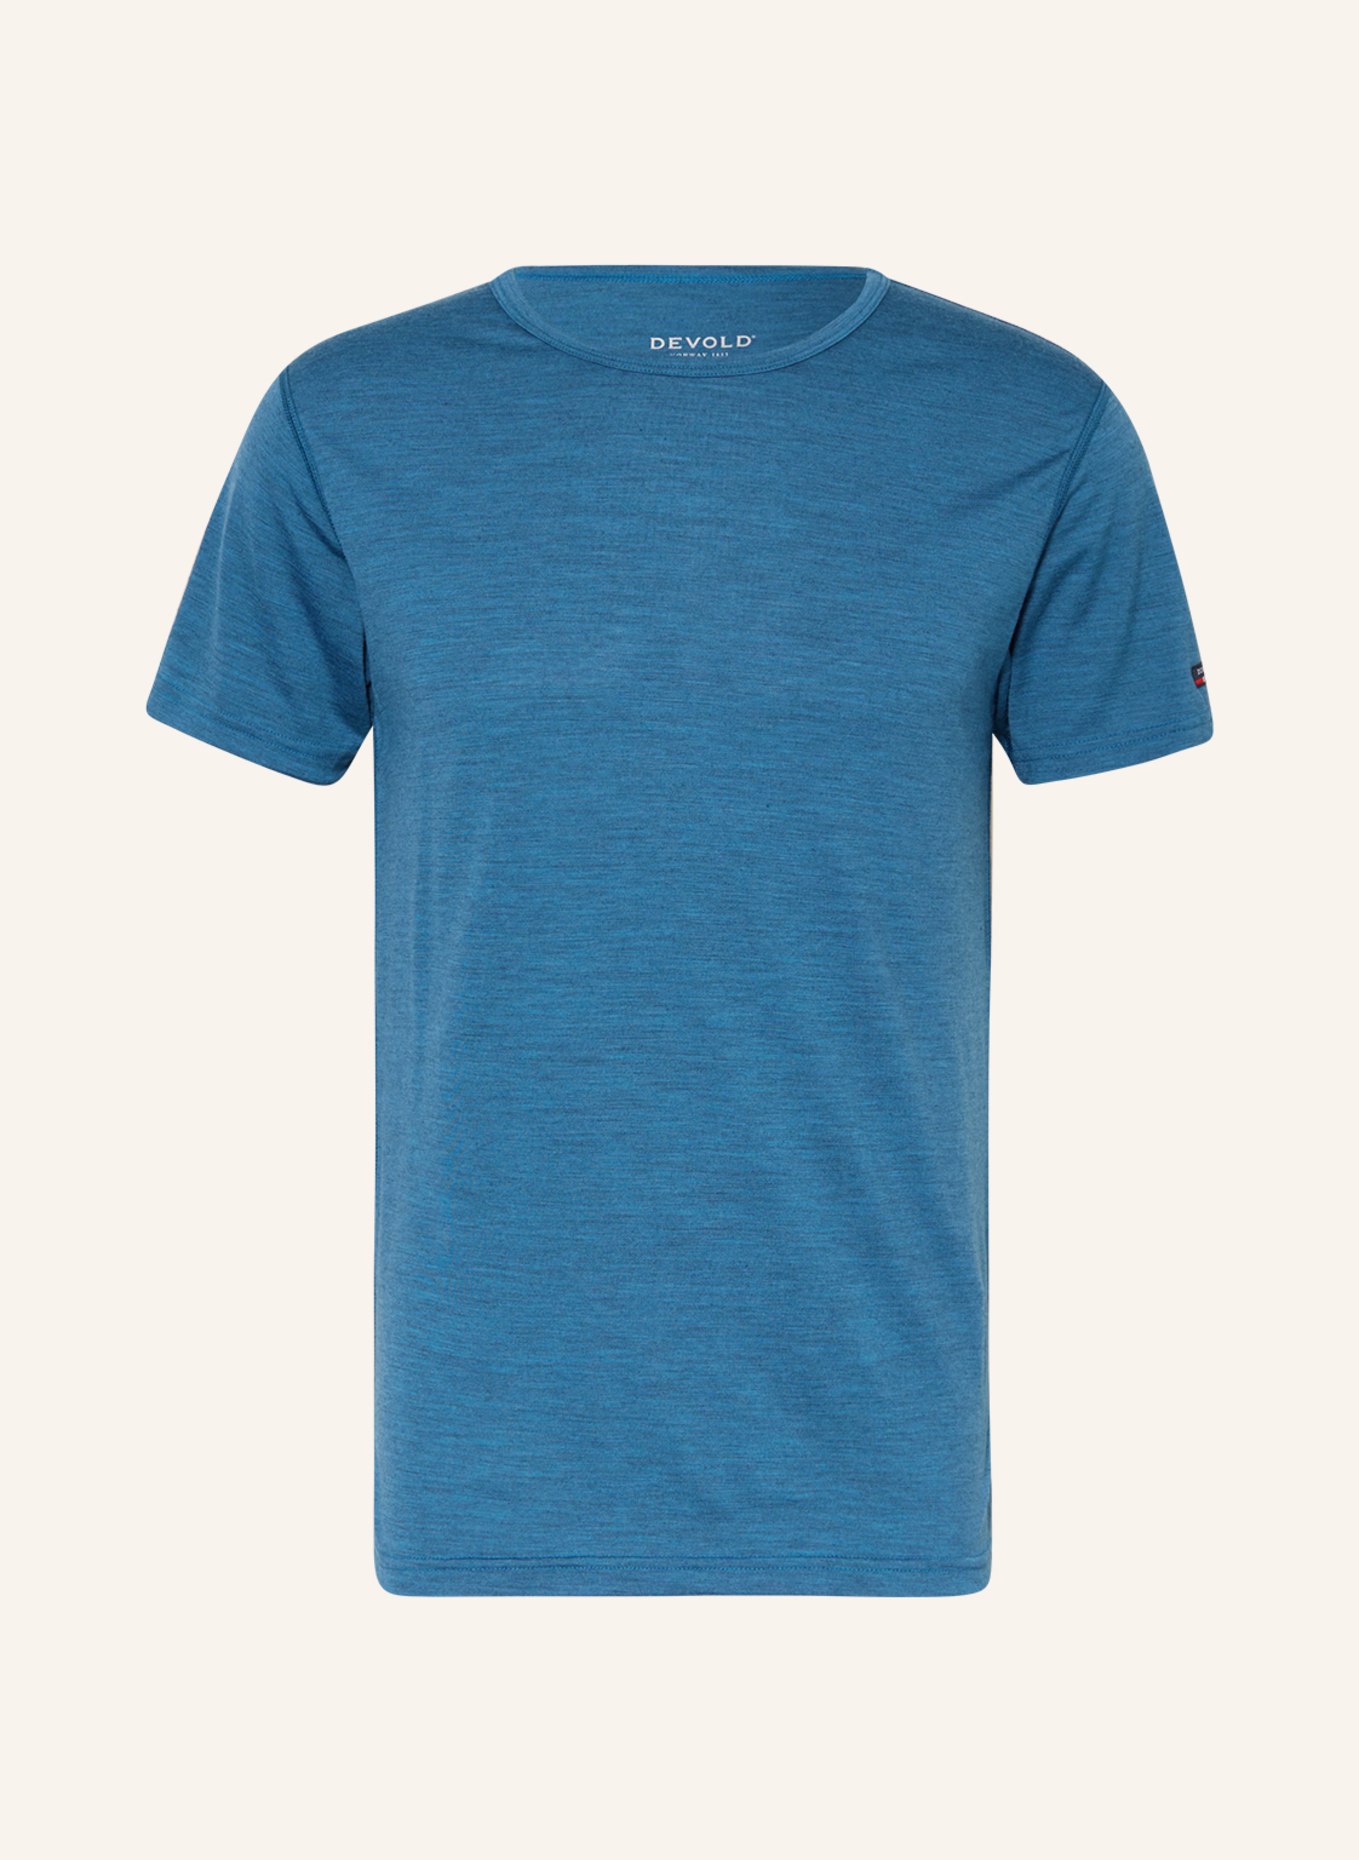 DEVOLD T-Shirt BREEZE MERINO 150, Farbe: DUNKELBLAU (Bild 1)